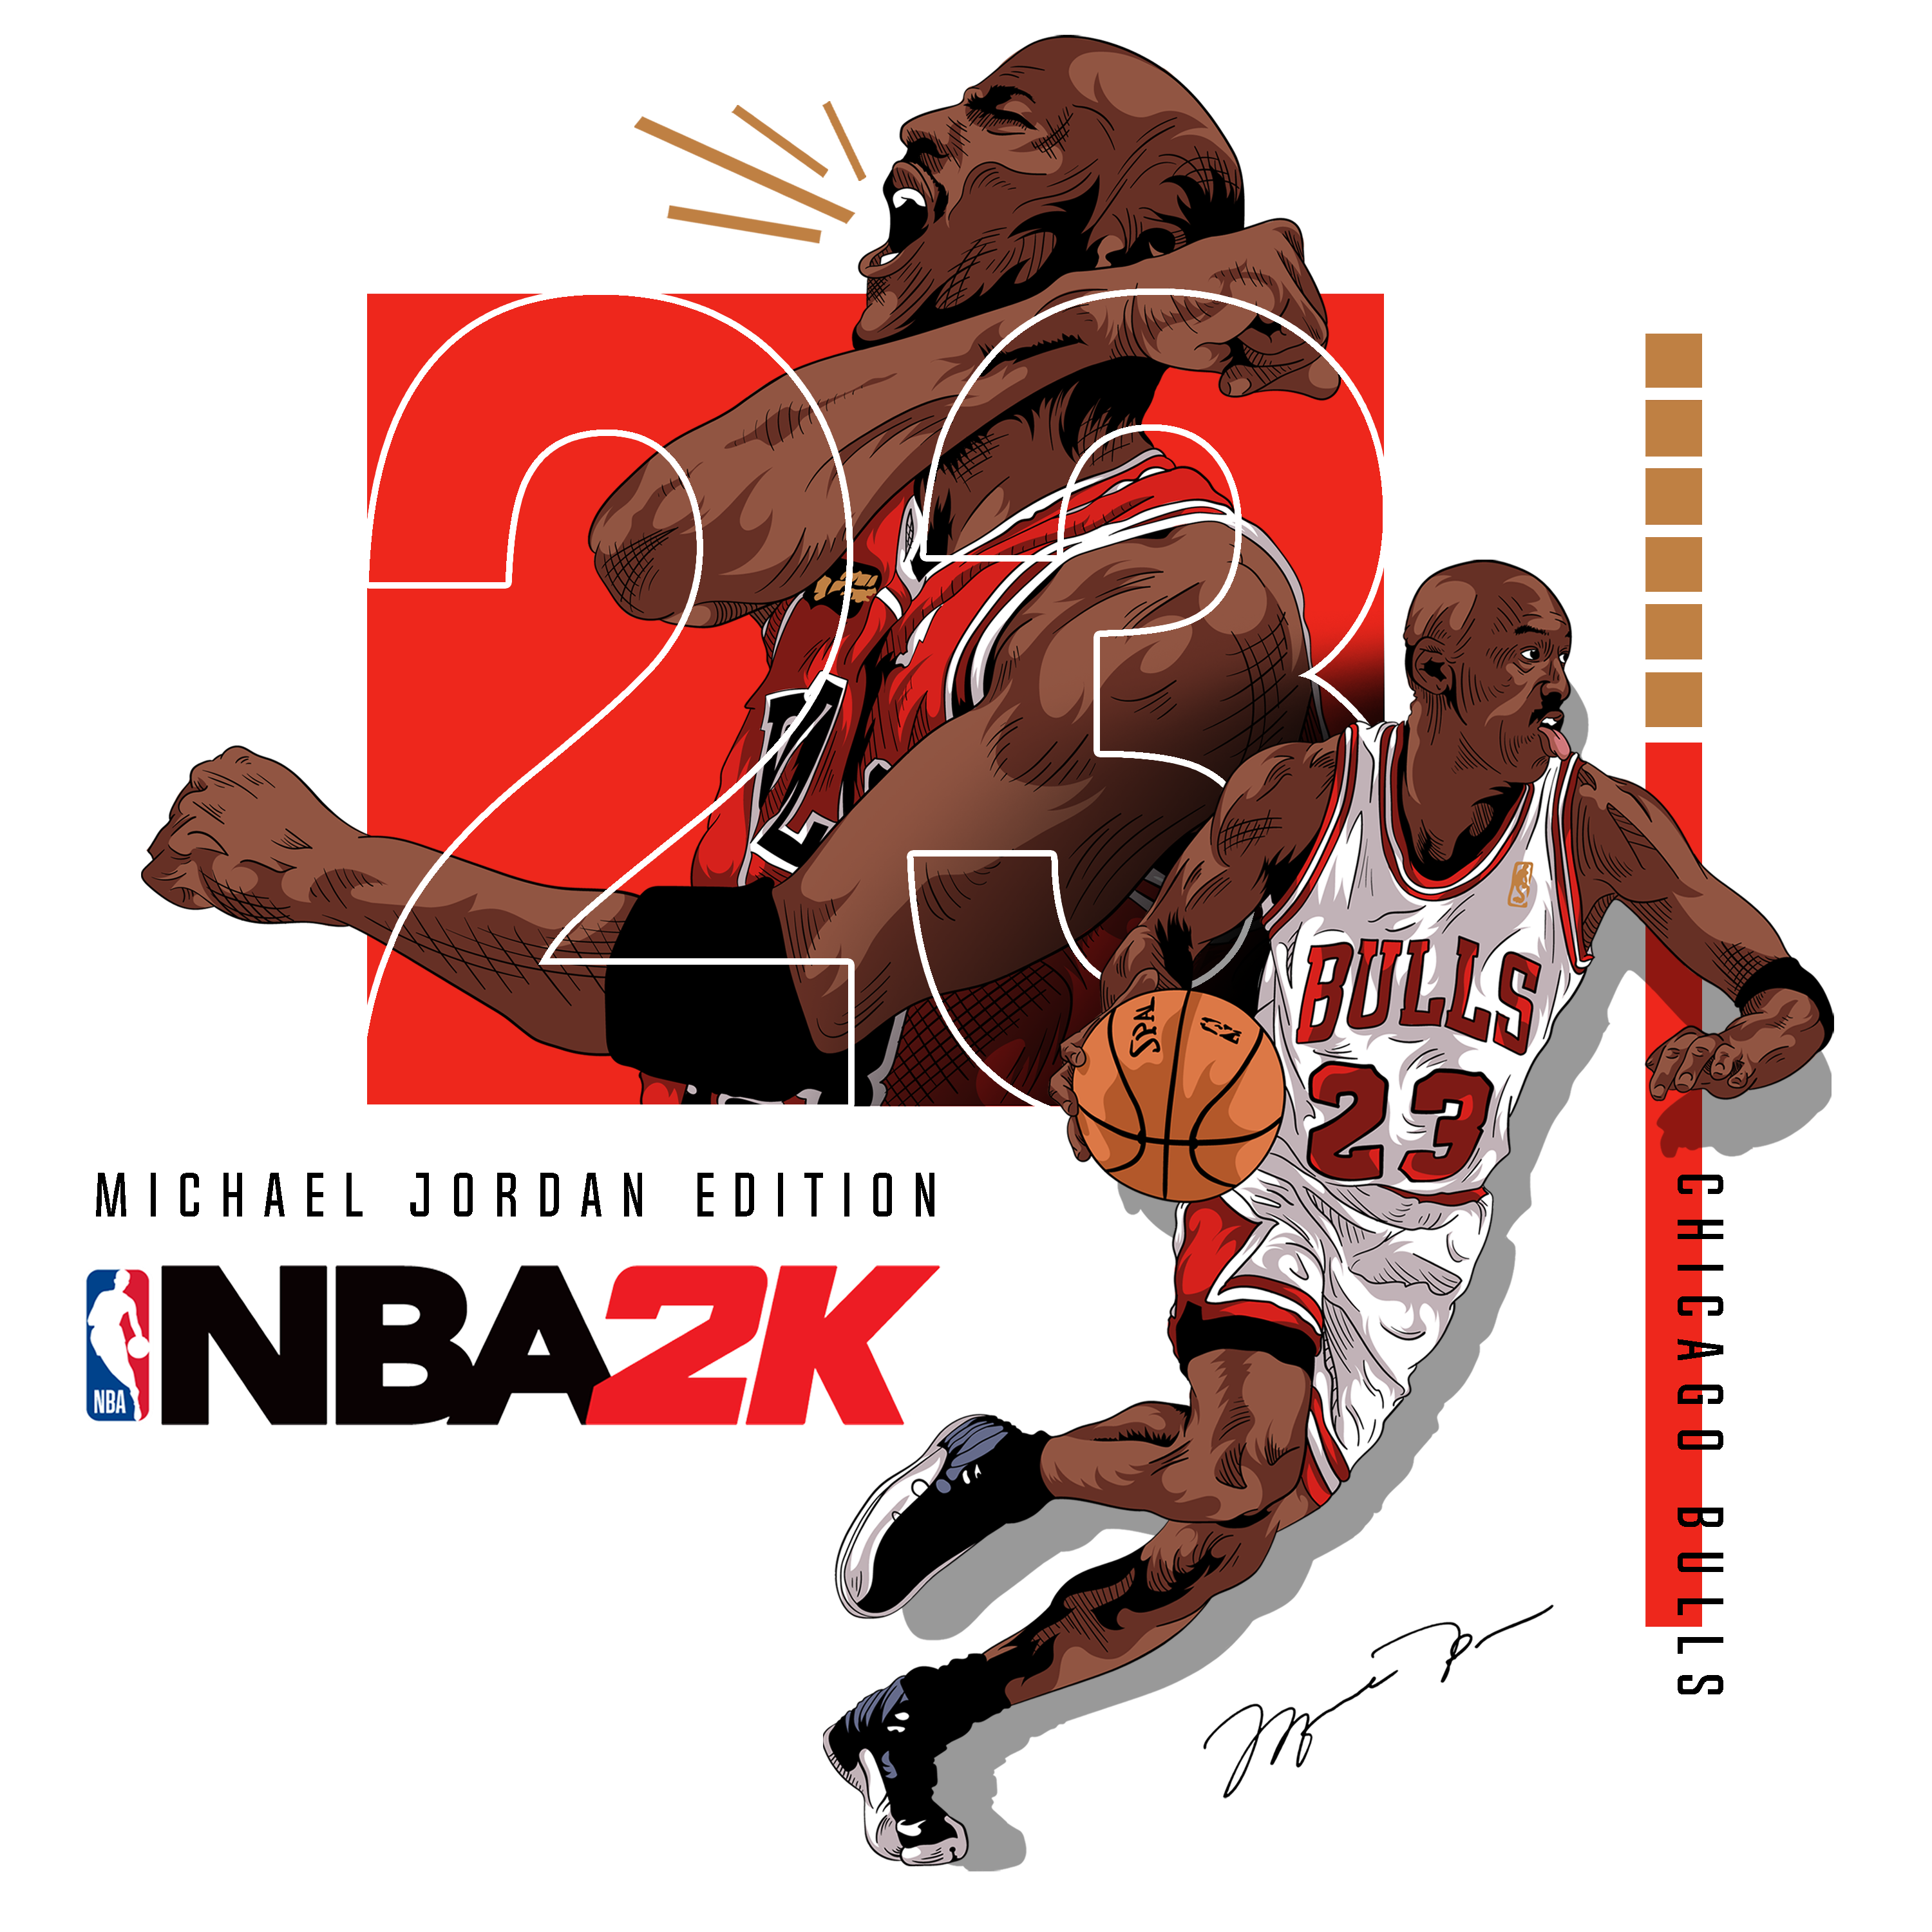 NBA 2K23 Jordan challenge: legendary scoring duel between Michael